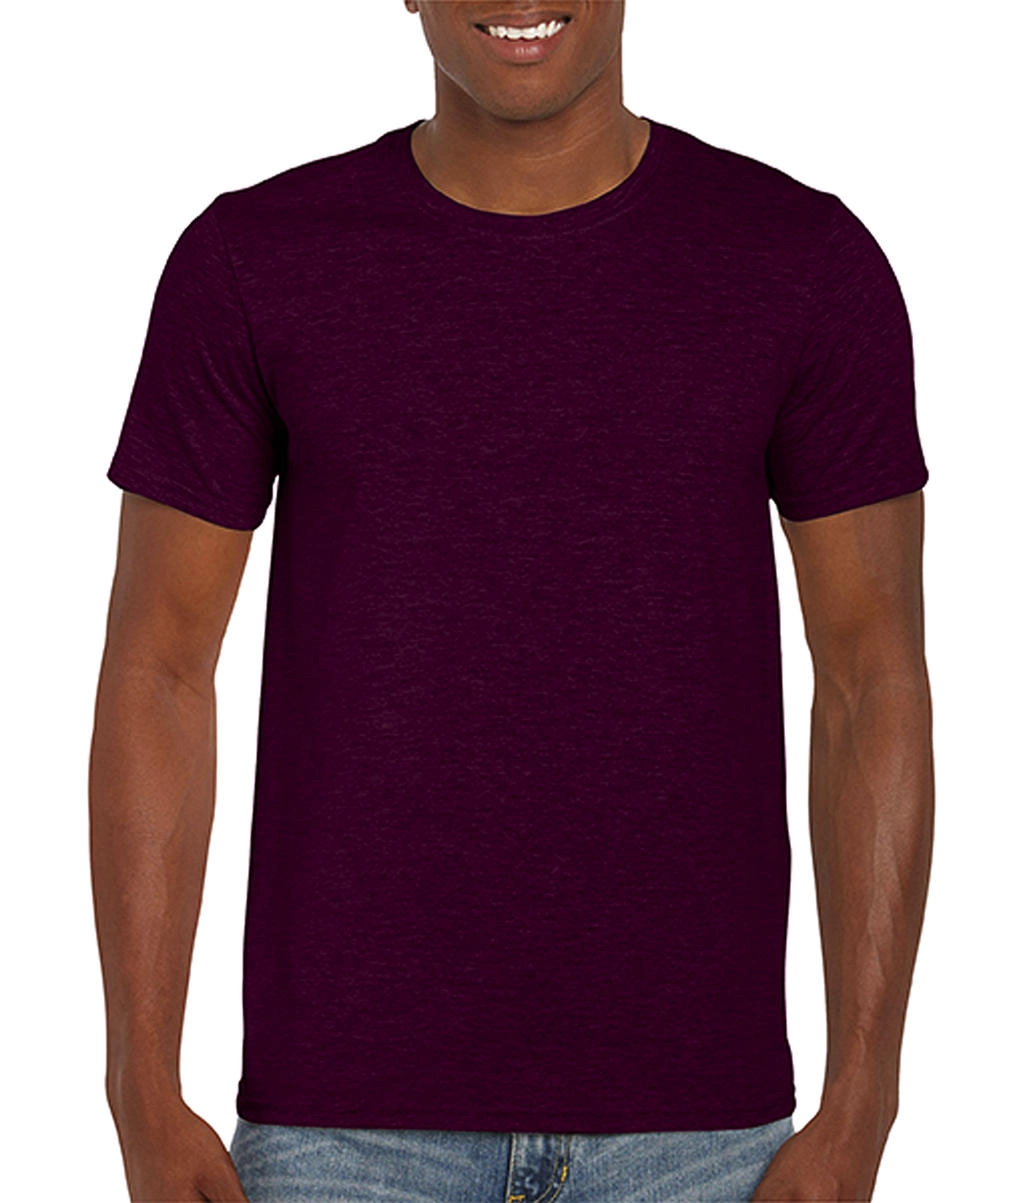 Softstyle® Ring Spun T-Shirt zum Besticken und Bedrucken in der Farbe Maroon mit Ihren Logo, Schriftzug oder Motiv.